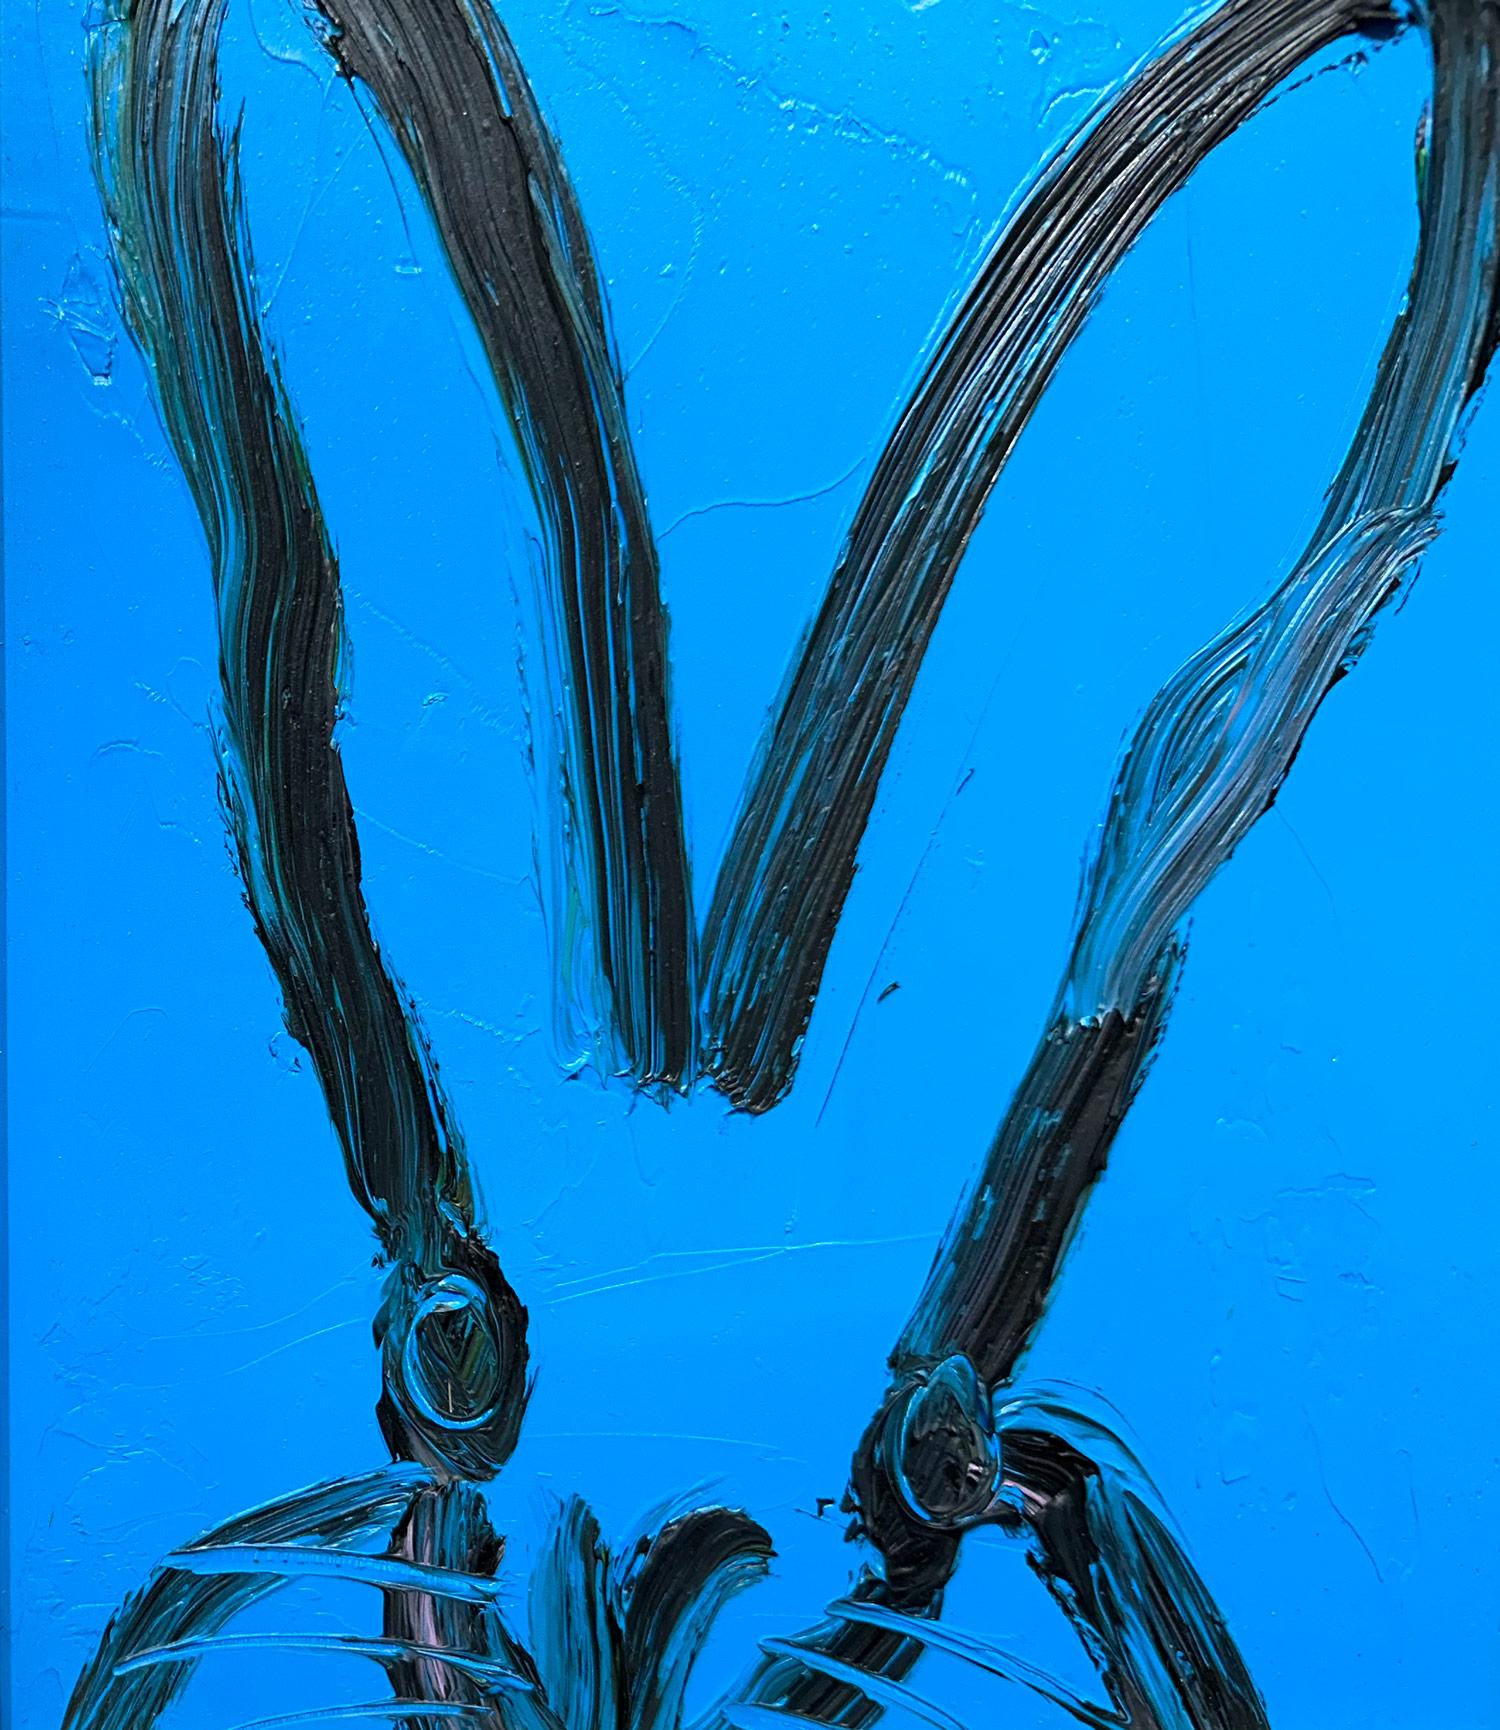 Eine wunderbare Komposition eines der ikonischsten Themen von Slonem, nämlich Hasen. Dieses Werk zeigt eine gestische Figur eines schwarzen Hasen auf einem französisch-blauen Hintergrund mit dickem Farbauftrag. Es ist in einem wunderschönen